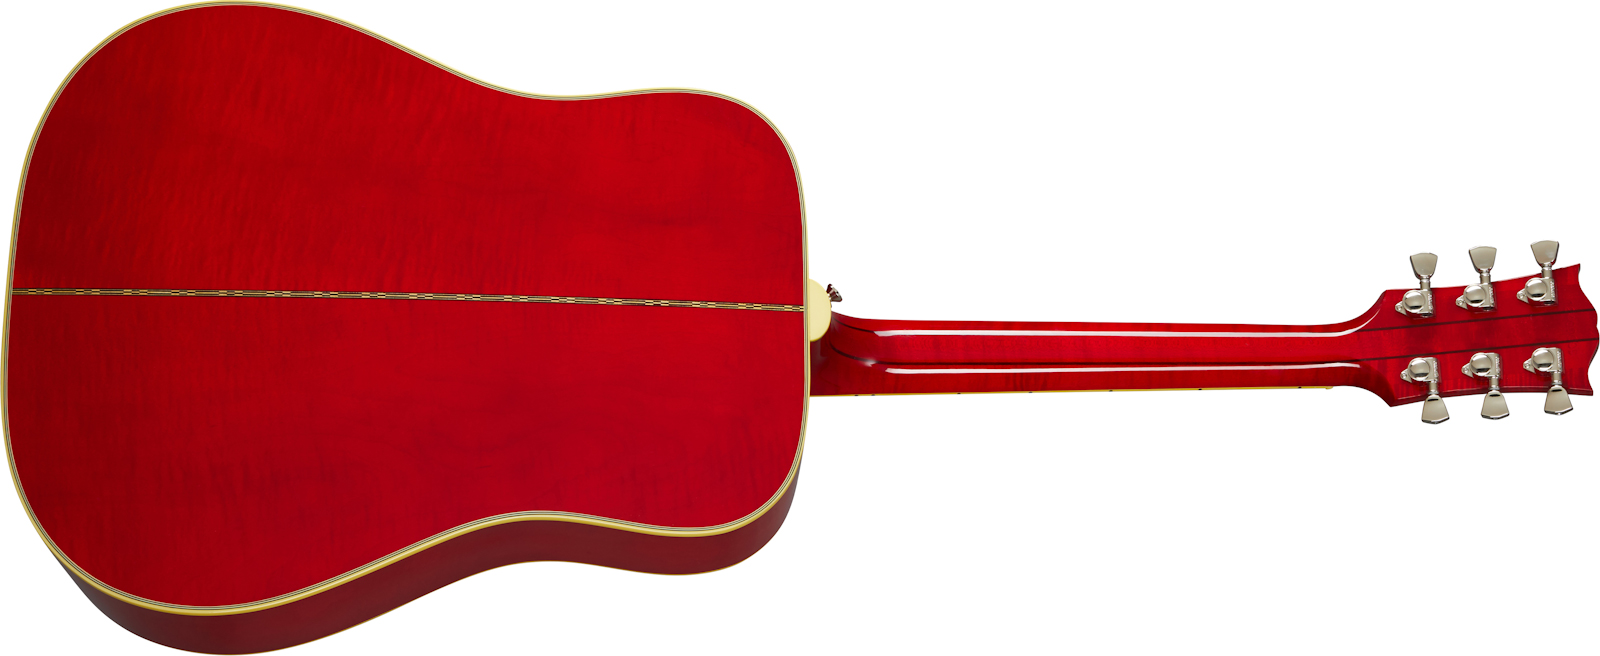 Gibson Dove Original 2020 Dreadnought Epicea Erable Rw - Antique Natural - Guitare Electro Acoustique - Variation 1